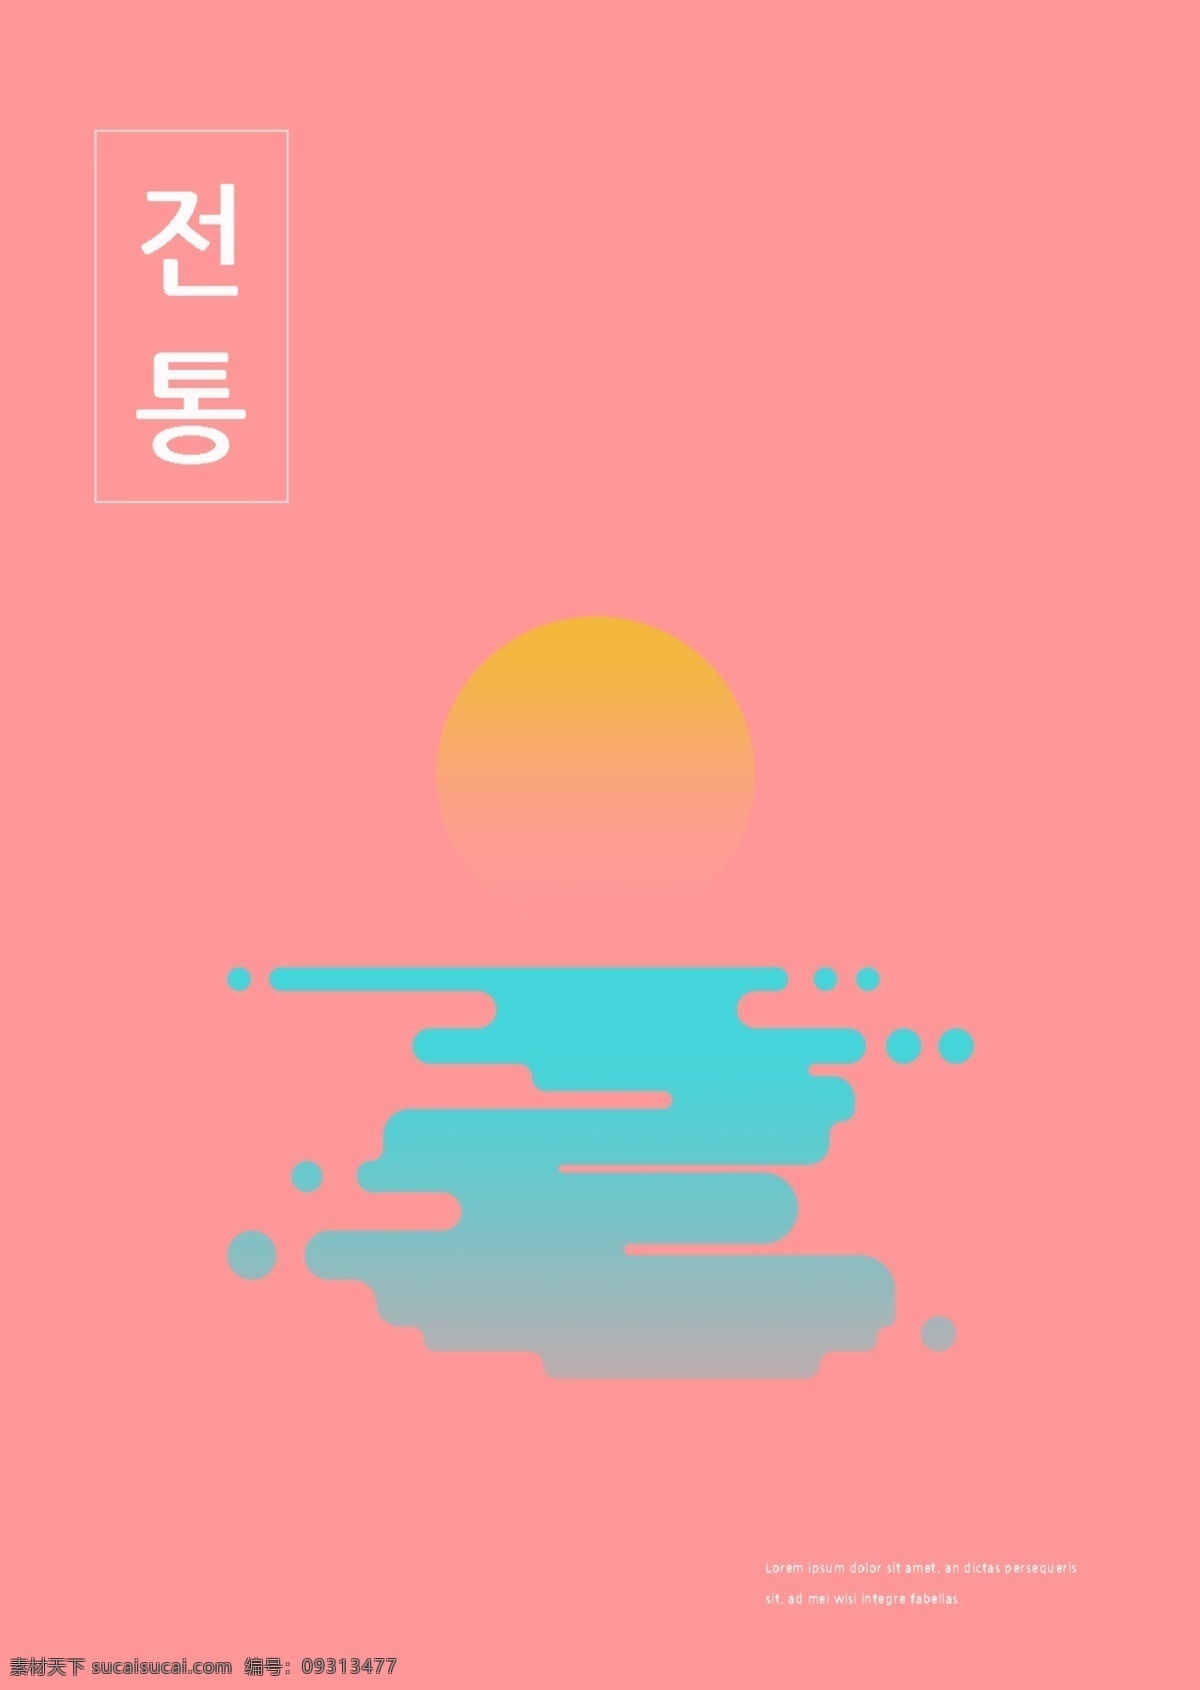 韩国 色彩 对比 抽象 文化 艺术设计 模板 之间 专辑 封面 肝脏药物 黄色 月亮 对比色 文艺 折叠盖 谢和 艺术 窗口 动画片 蓝色 粉 瓦楞 水